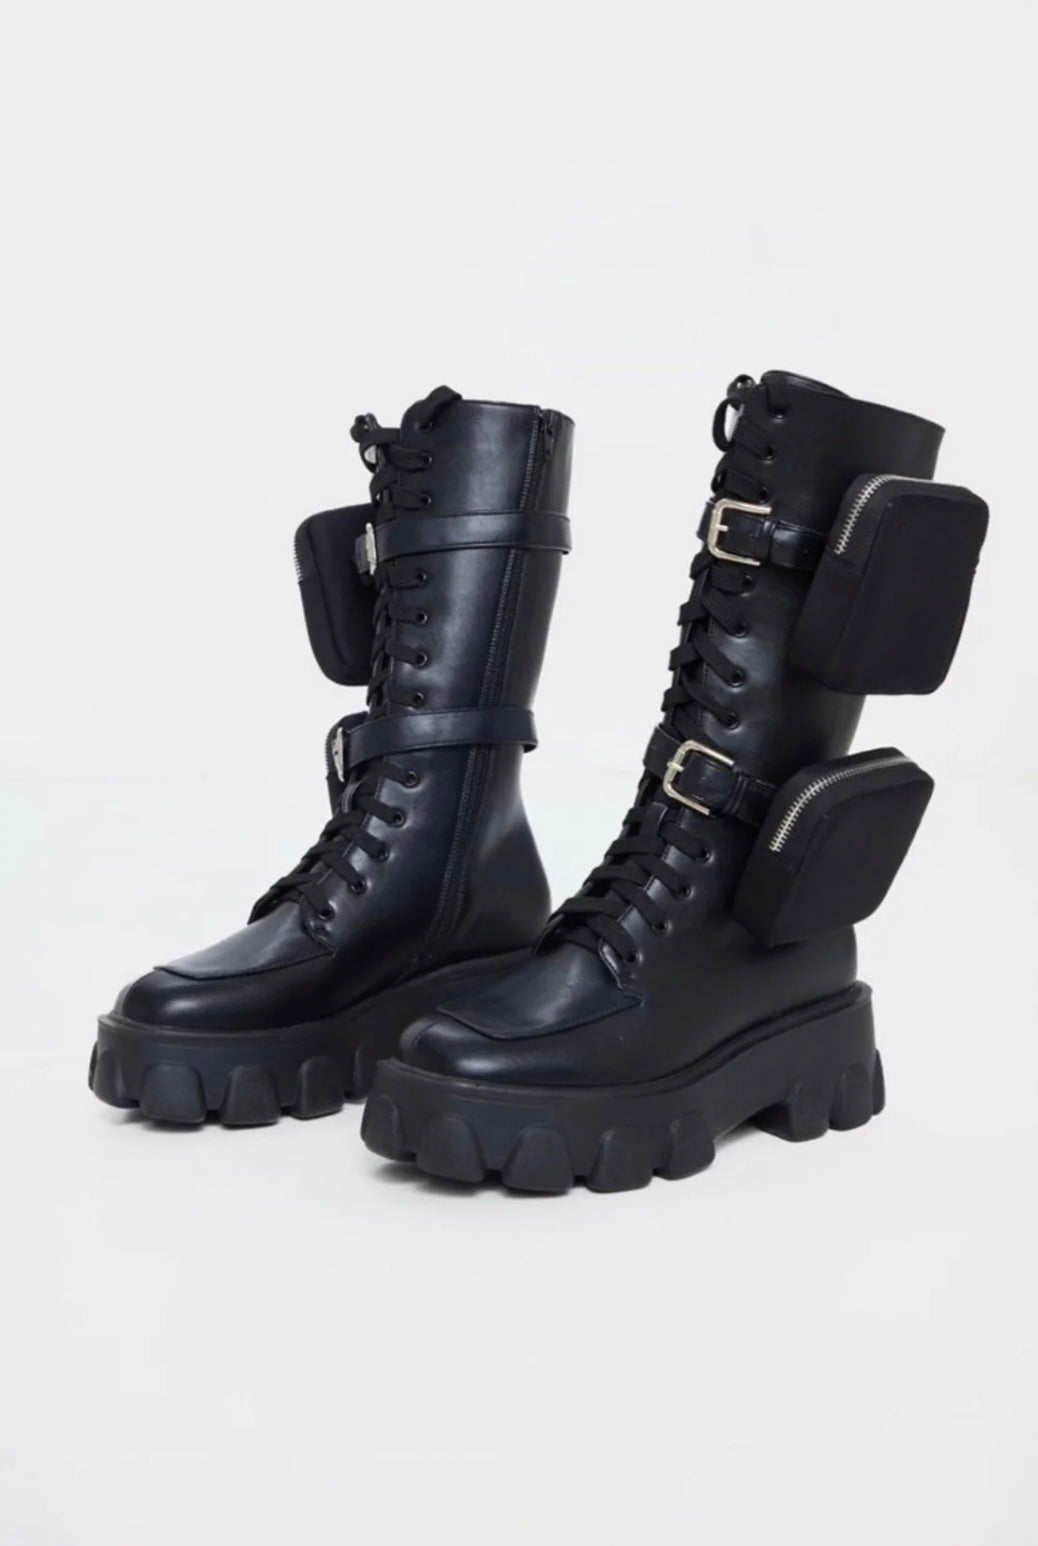 Black Combat Style/Biker Boots (US9)